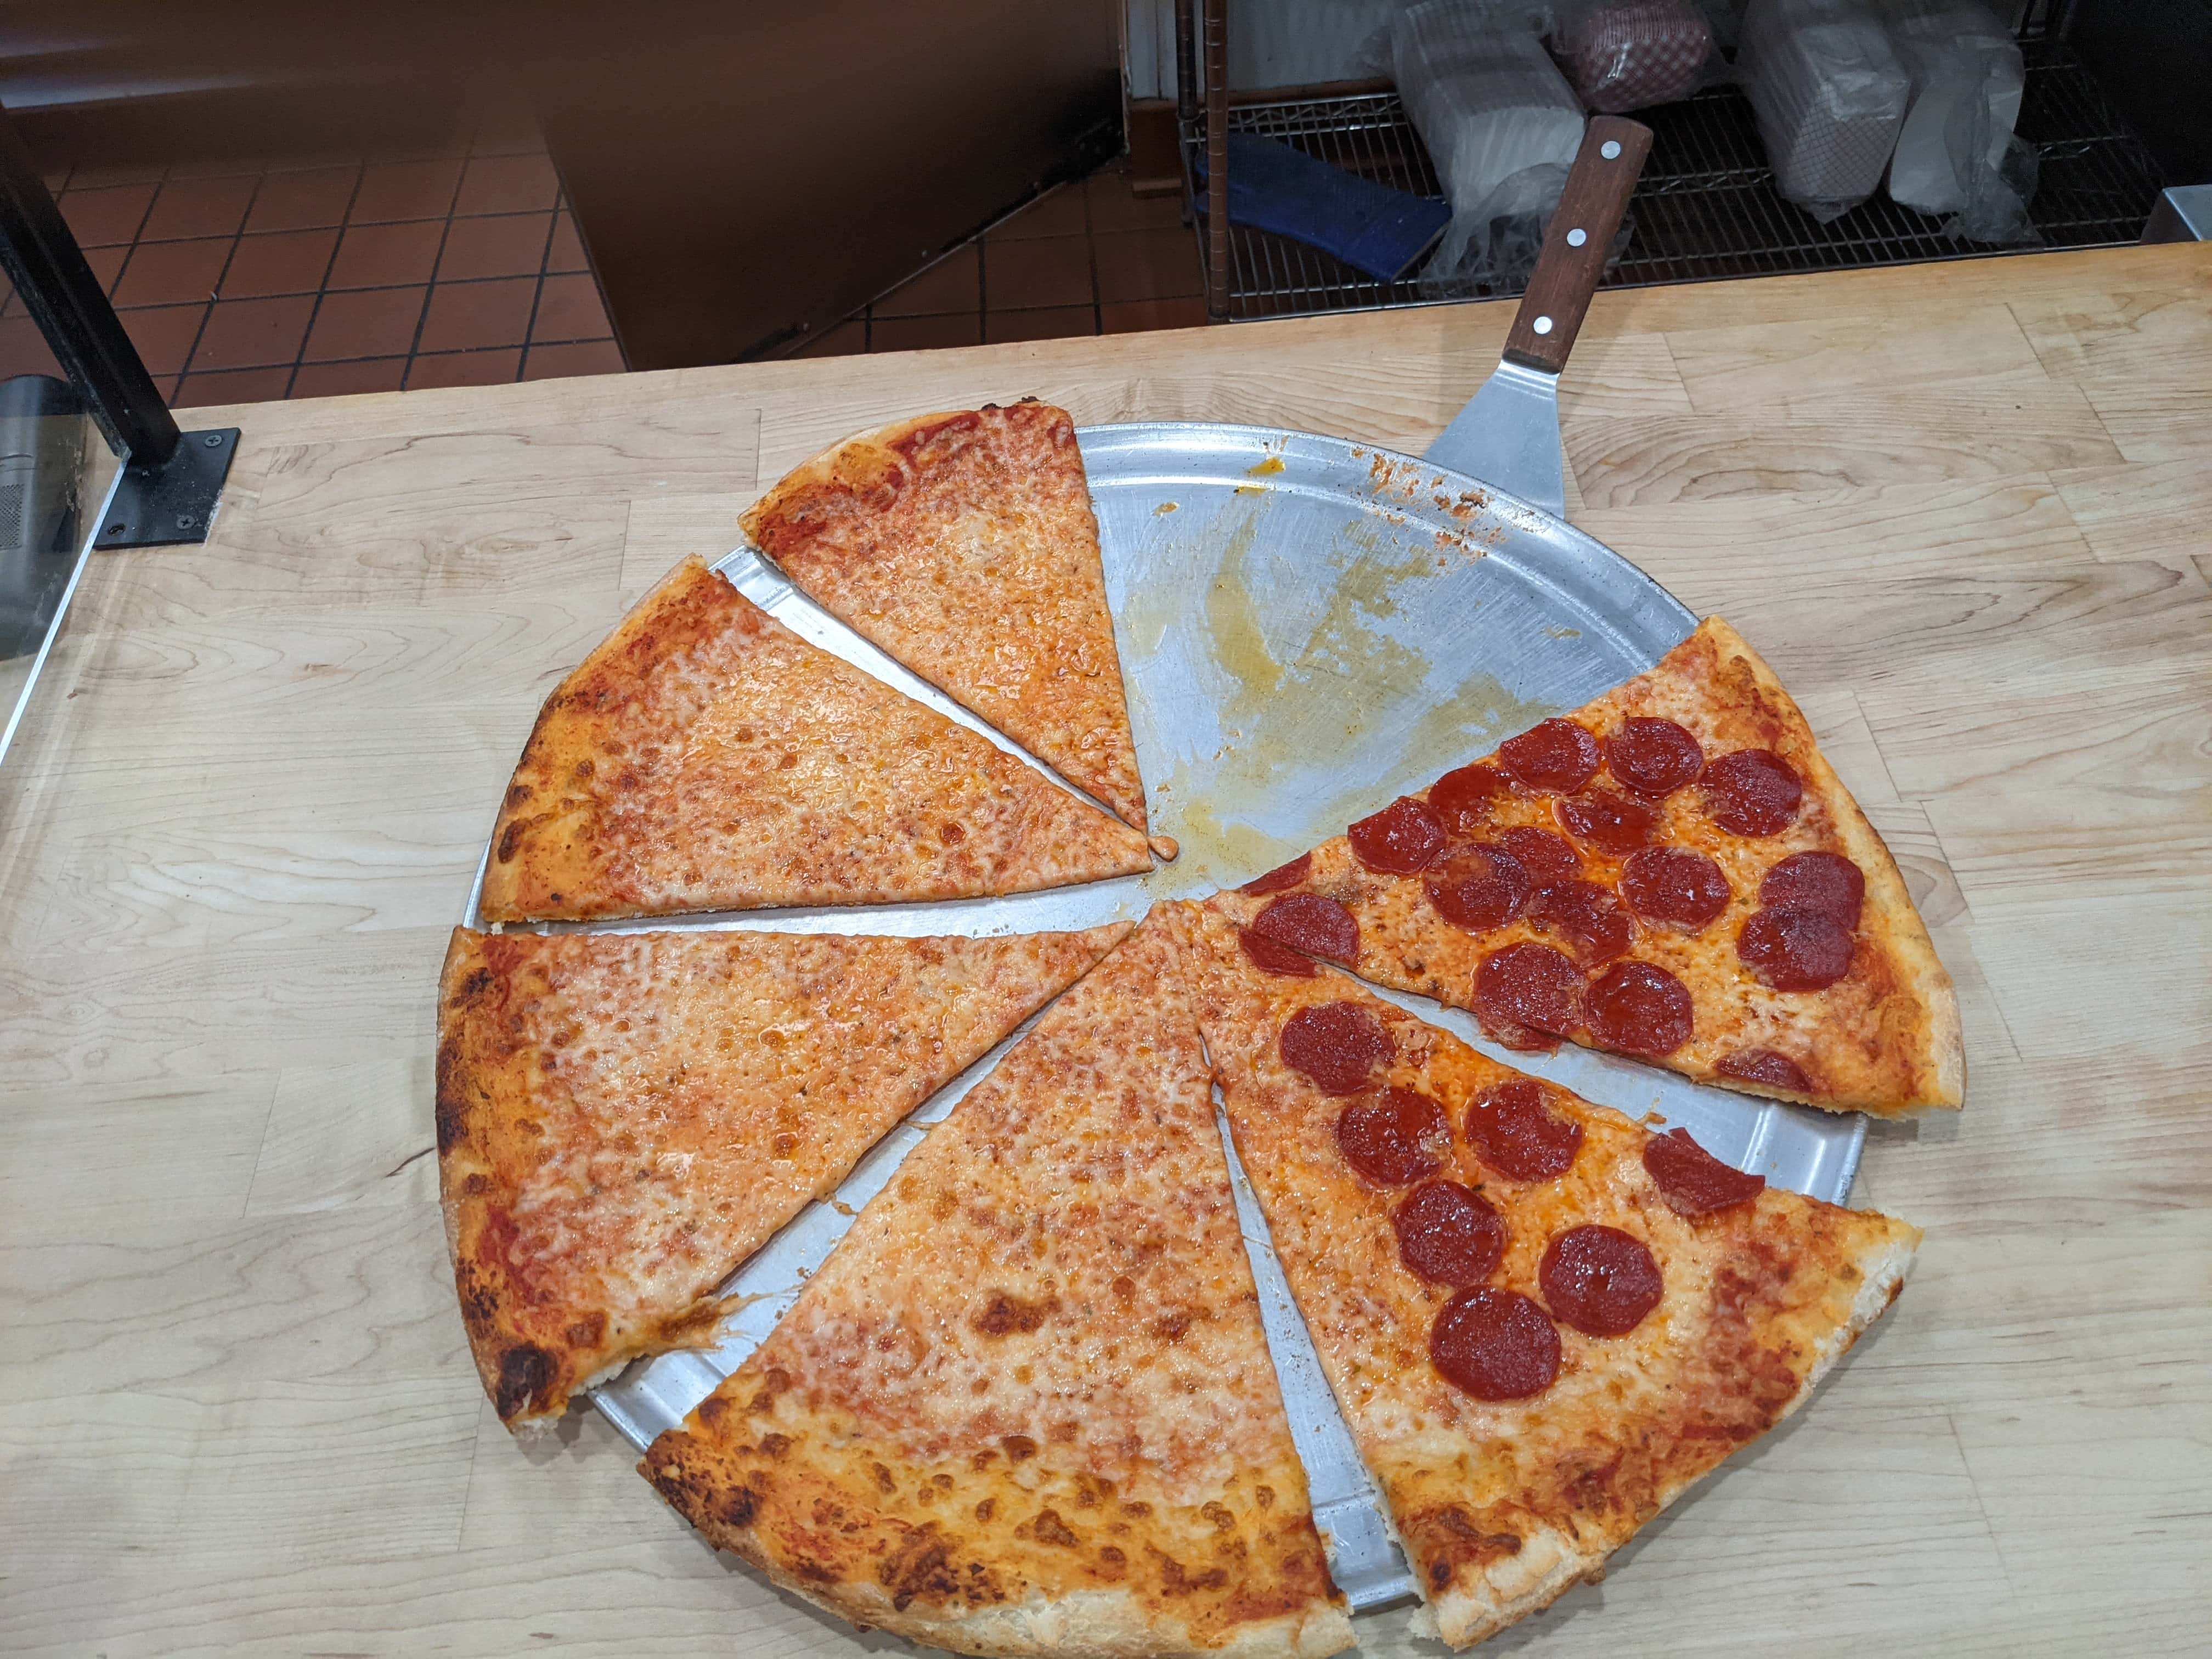 New York Pizza & Grill - Panama City Beach, FL, US, nearby pizzerias